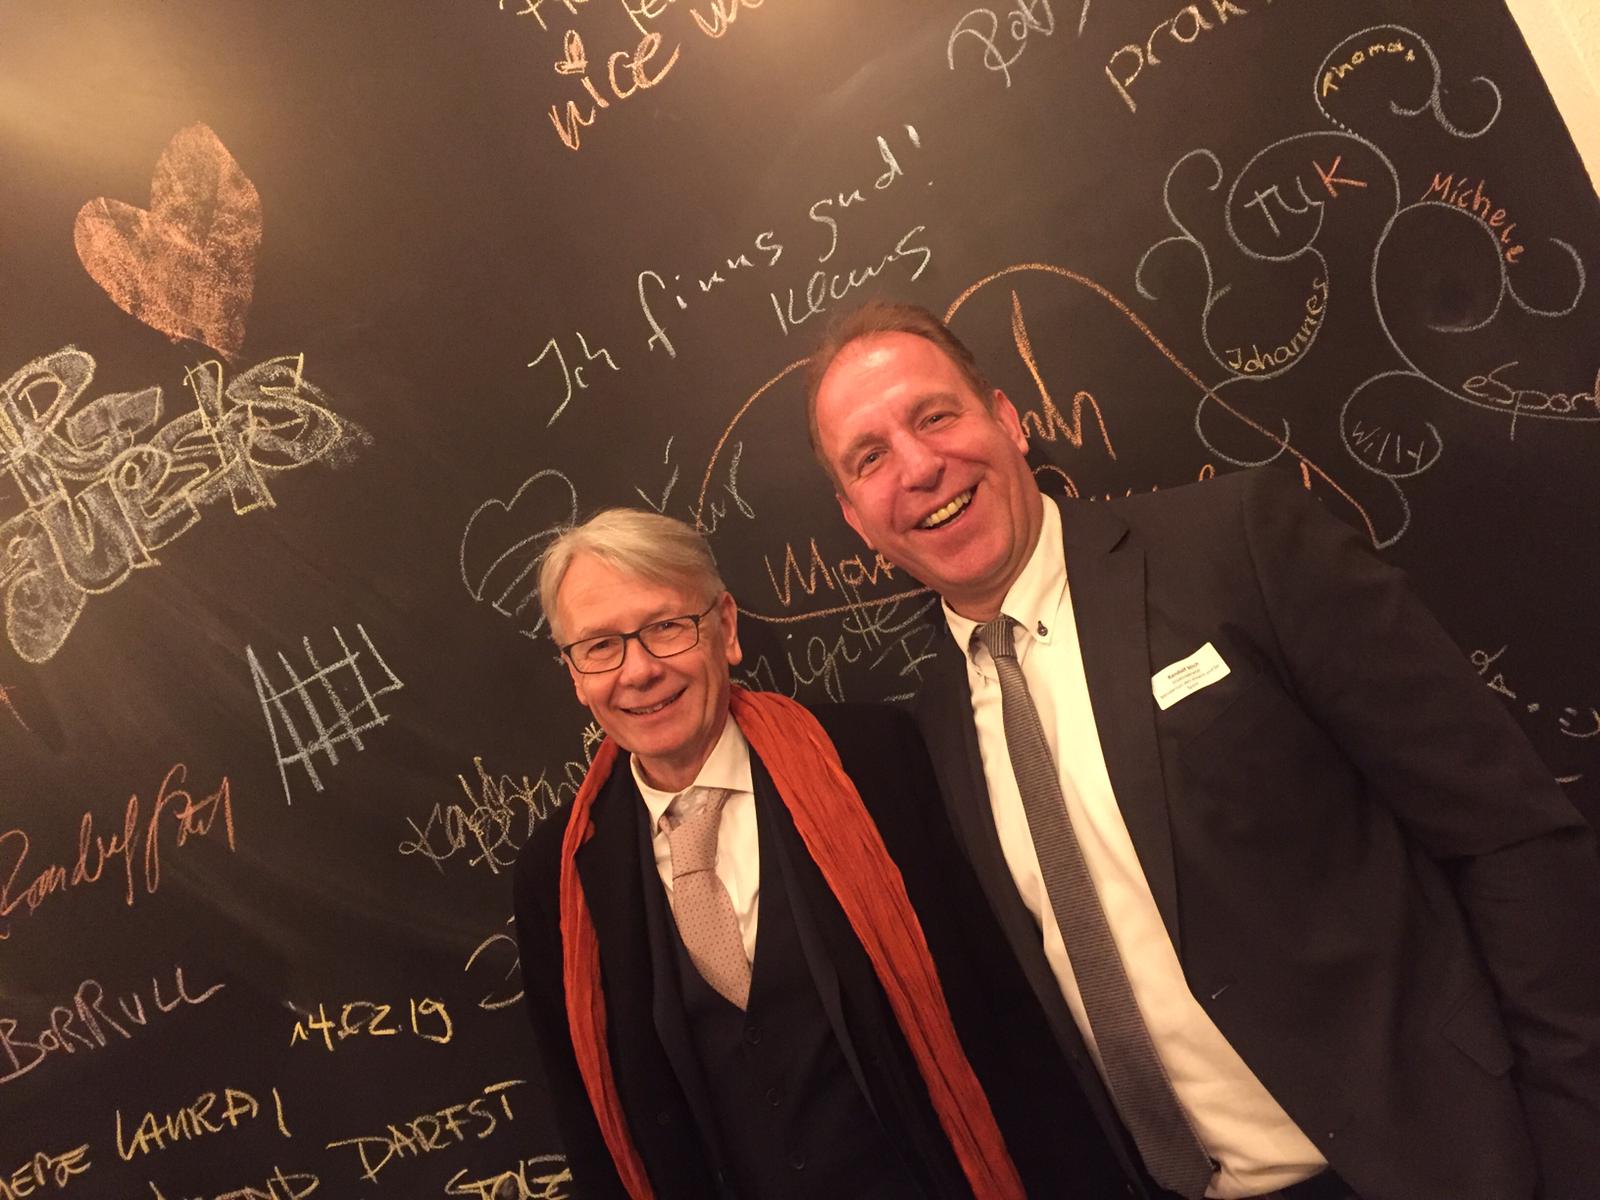 Zwei Männer (Oberbürgermeister Dr. Klaus Weichel und Staatssekretär Randolf Stich) stehen vor einer Kreidetafel nebeneinander.